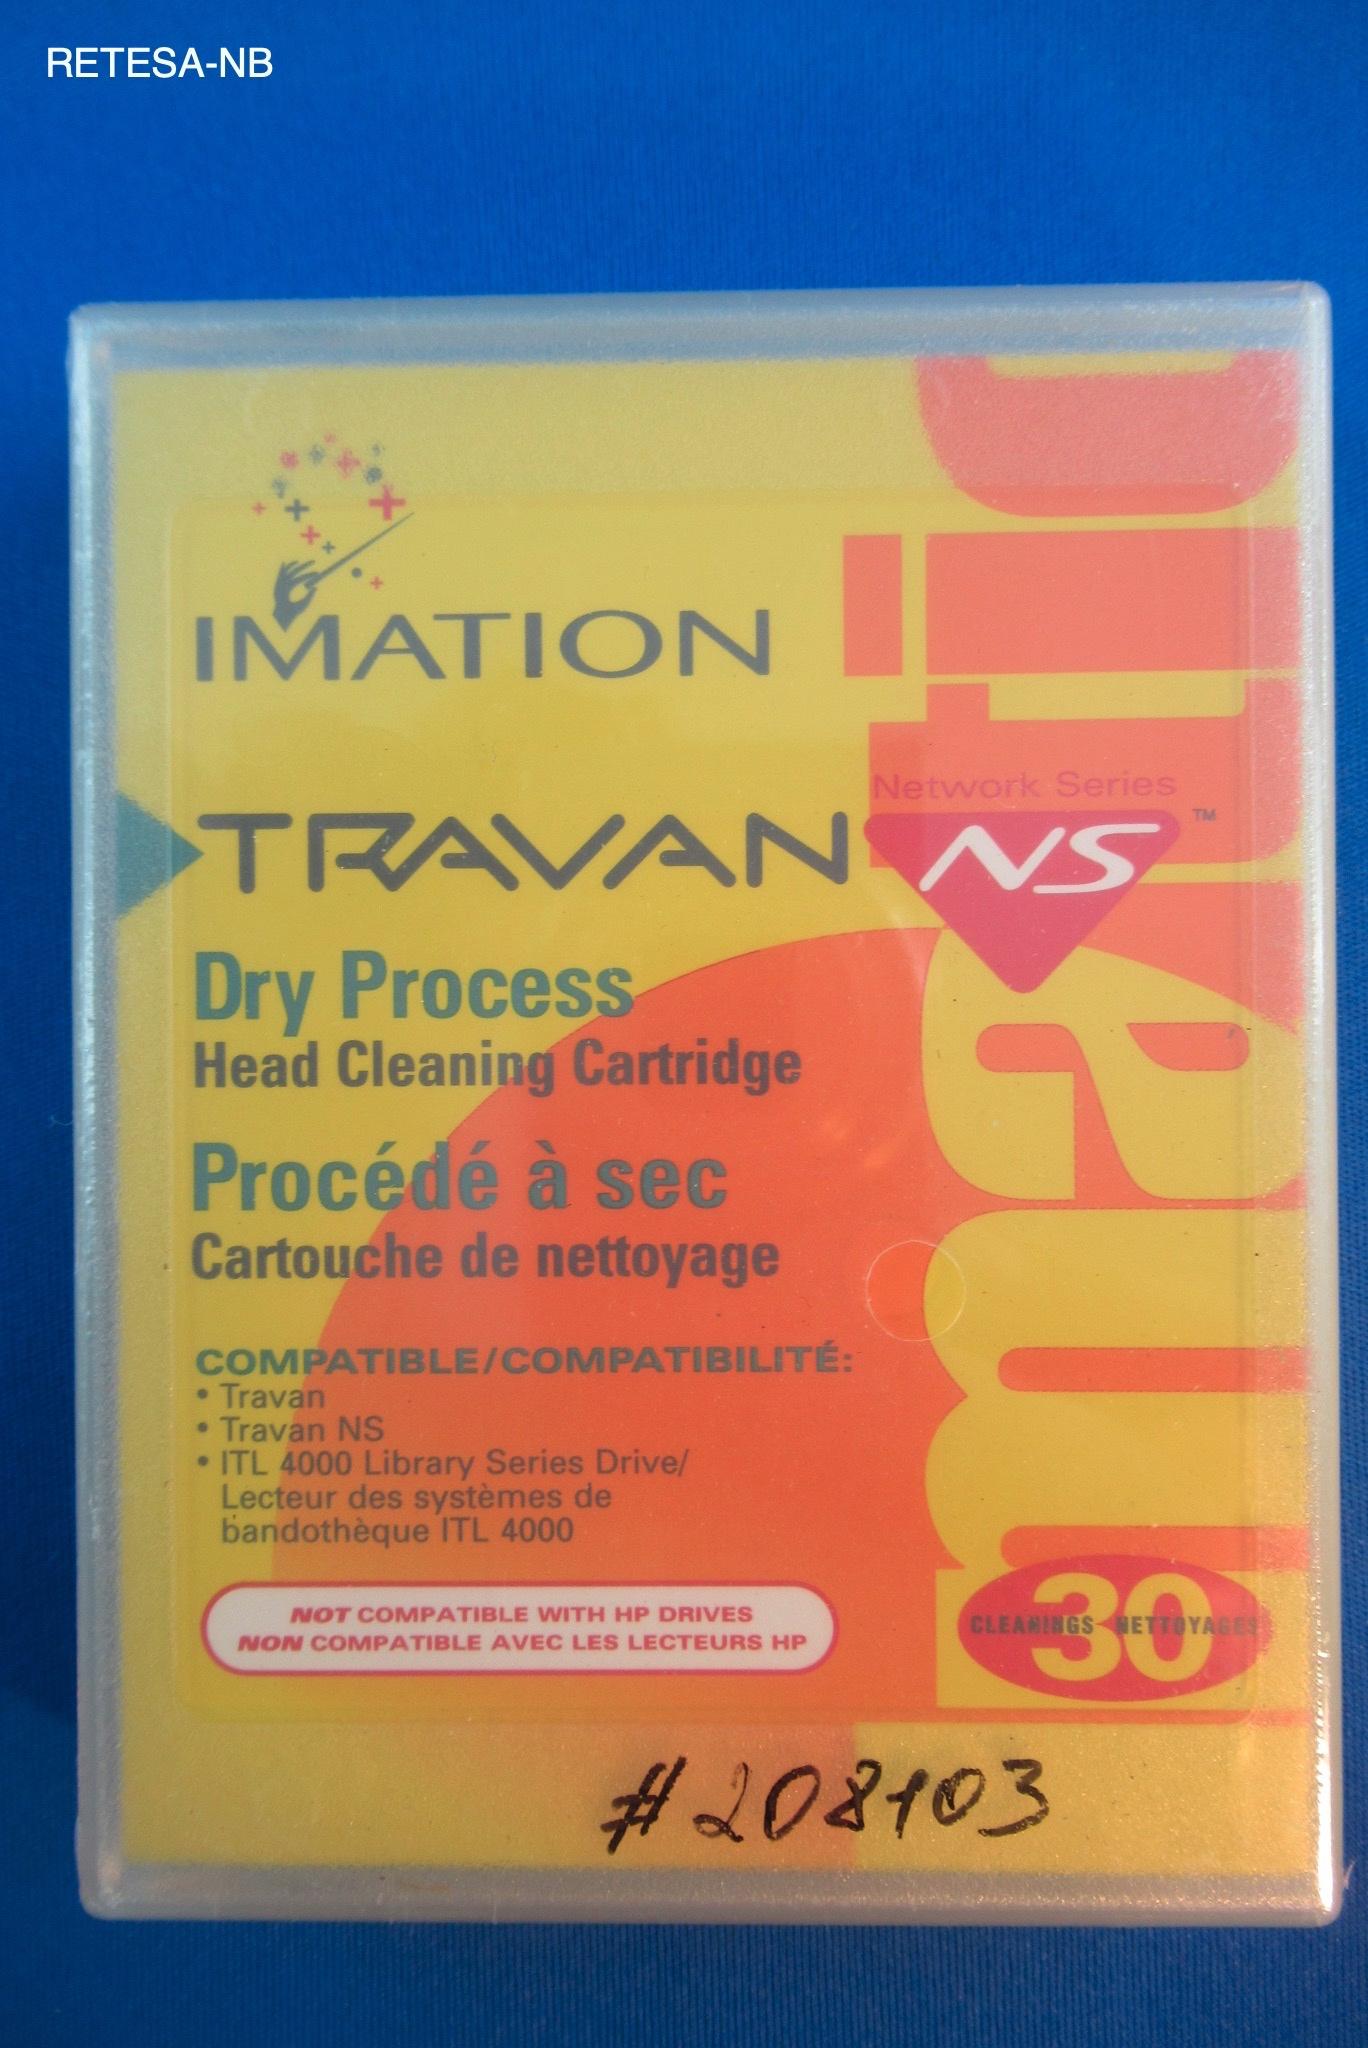 Reinigungs-Cartridge für TRAVAN NS IMATION 12132